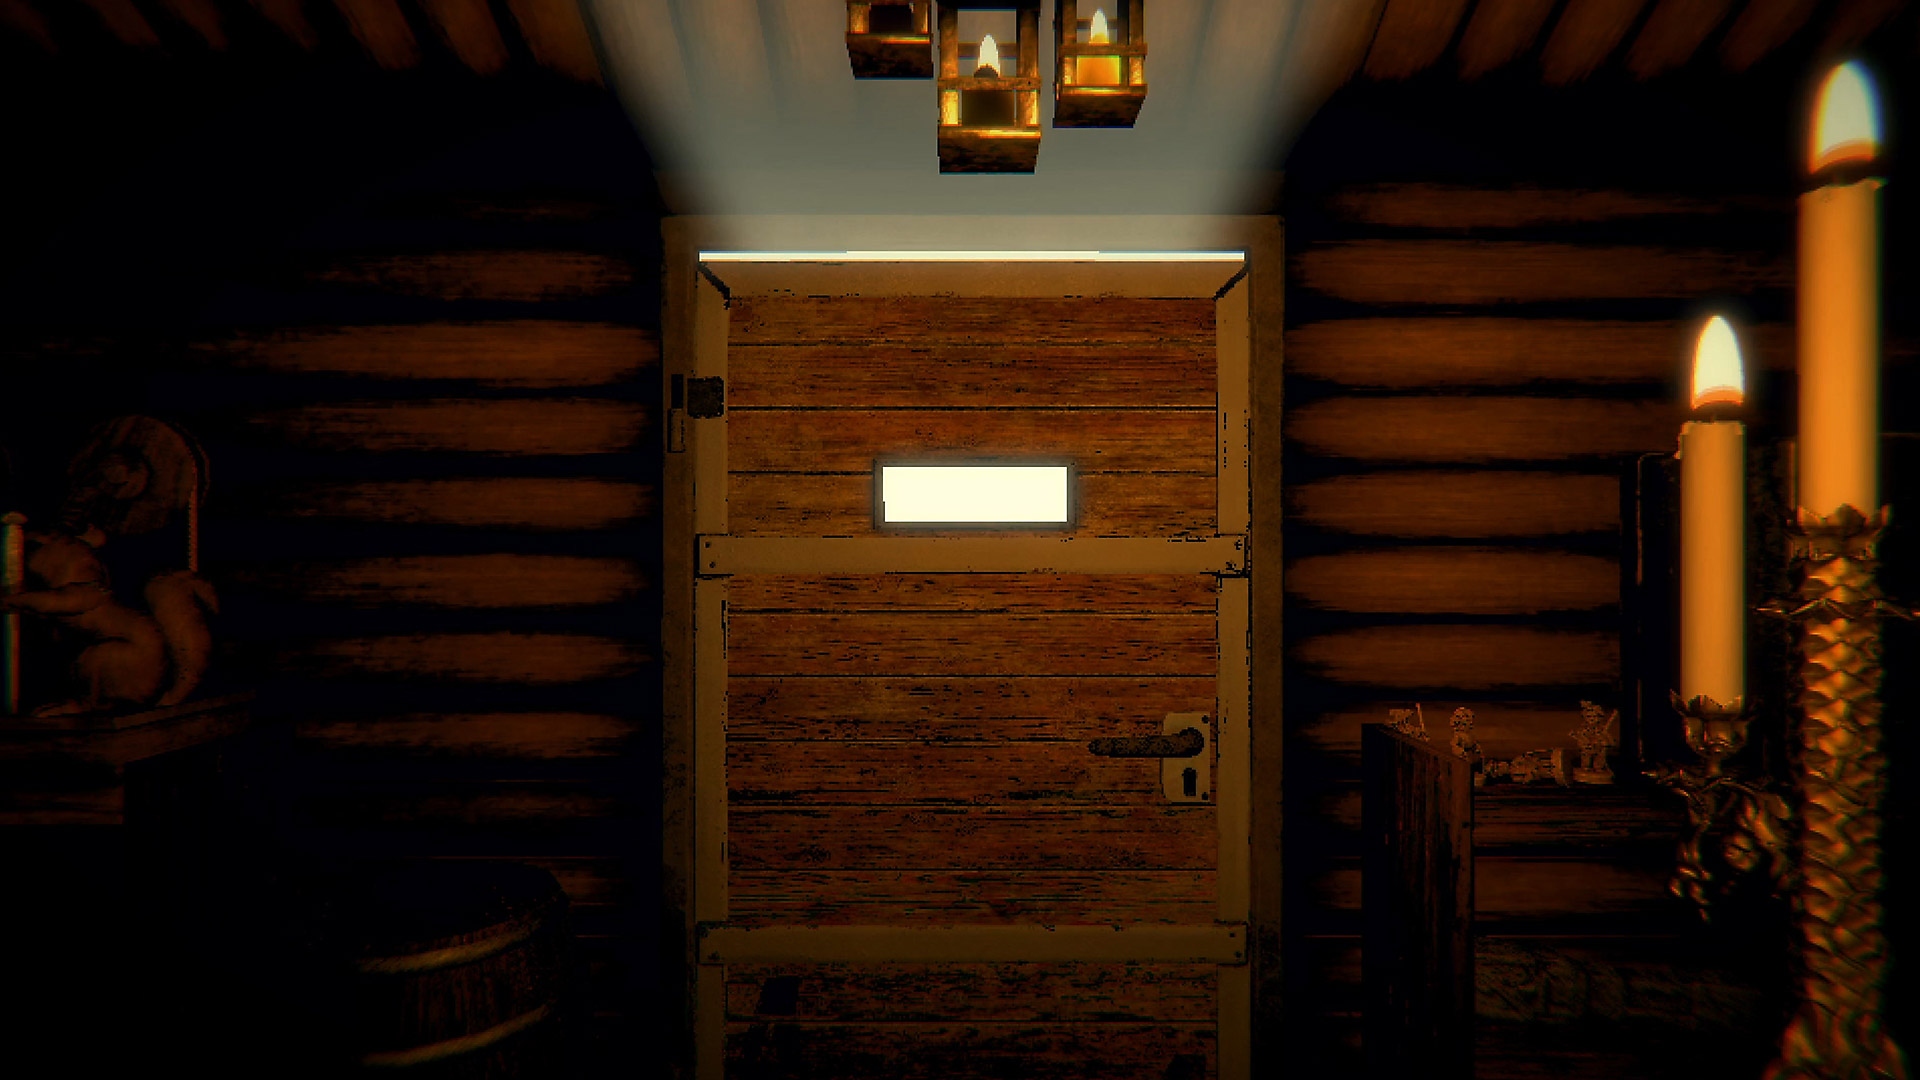 Capture d'écran du gameplay d'Inscryption montrant la porte fermée d'un couloir éclairé par une chandelle.